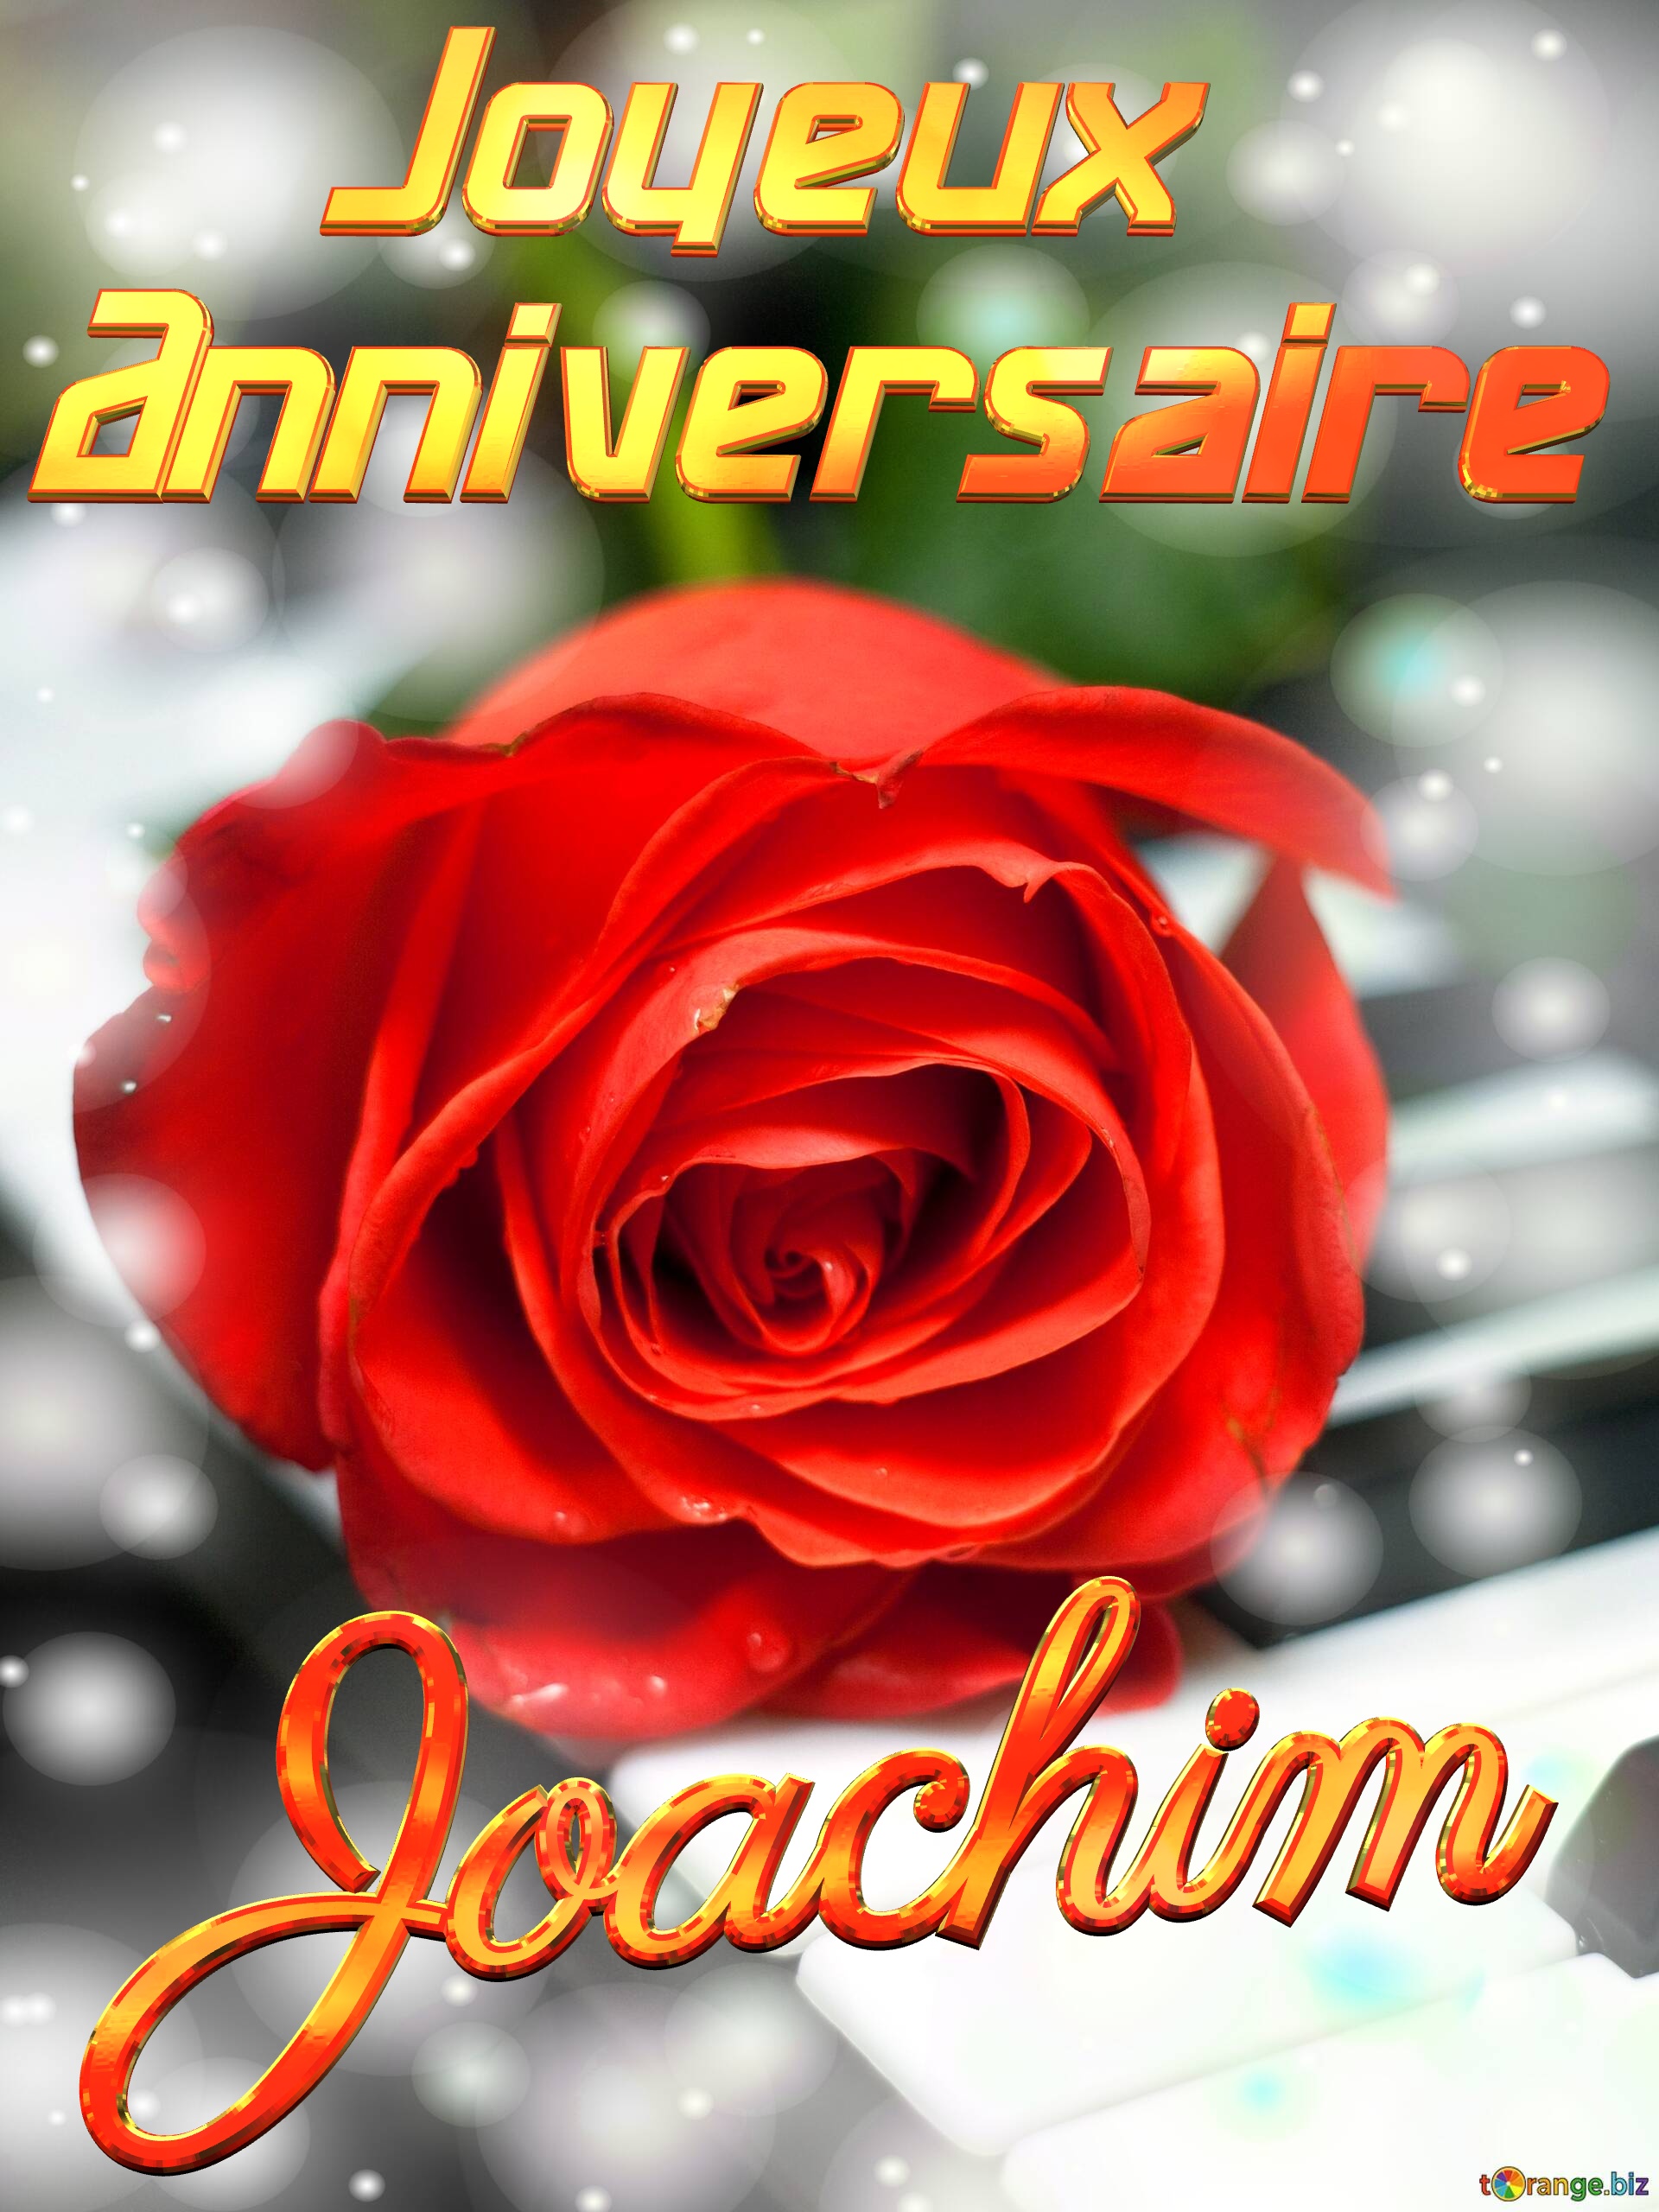 Joachim Joyeux  Anniversaire Fond de carte de musique fleur rose №0